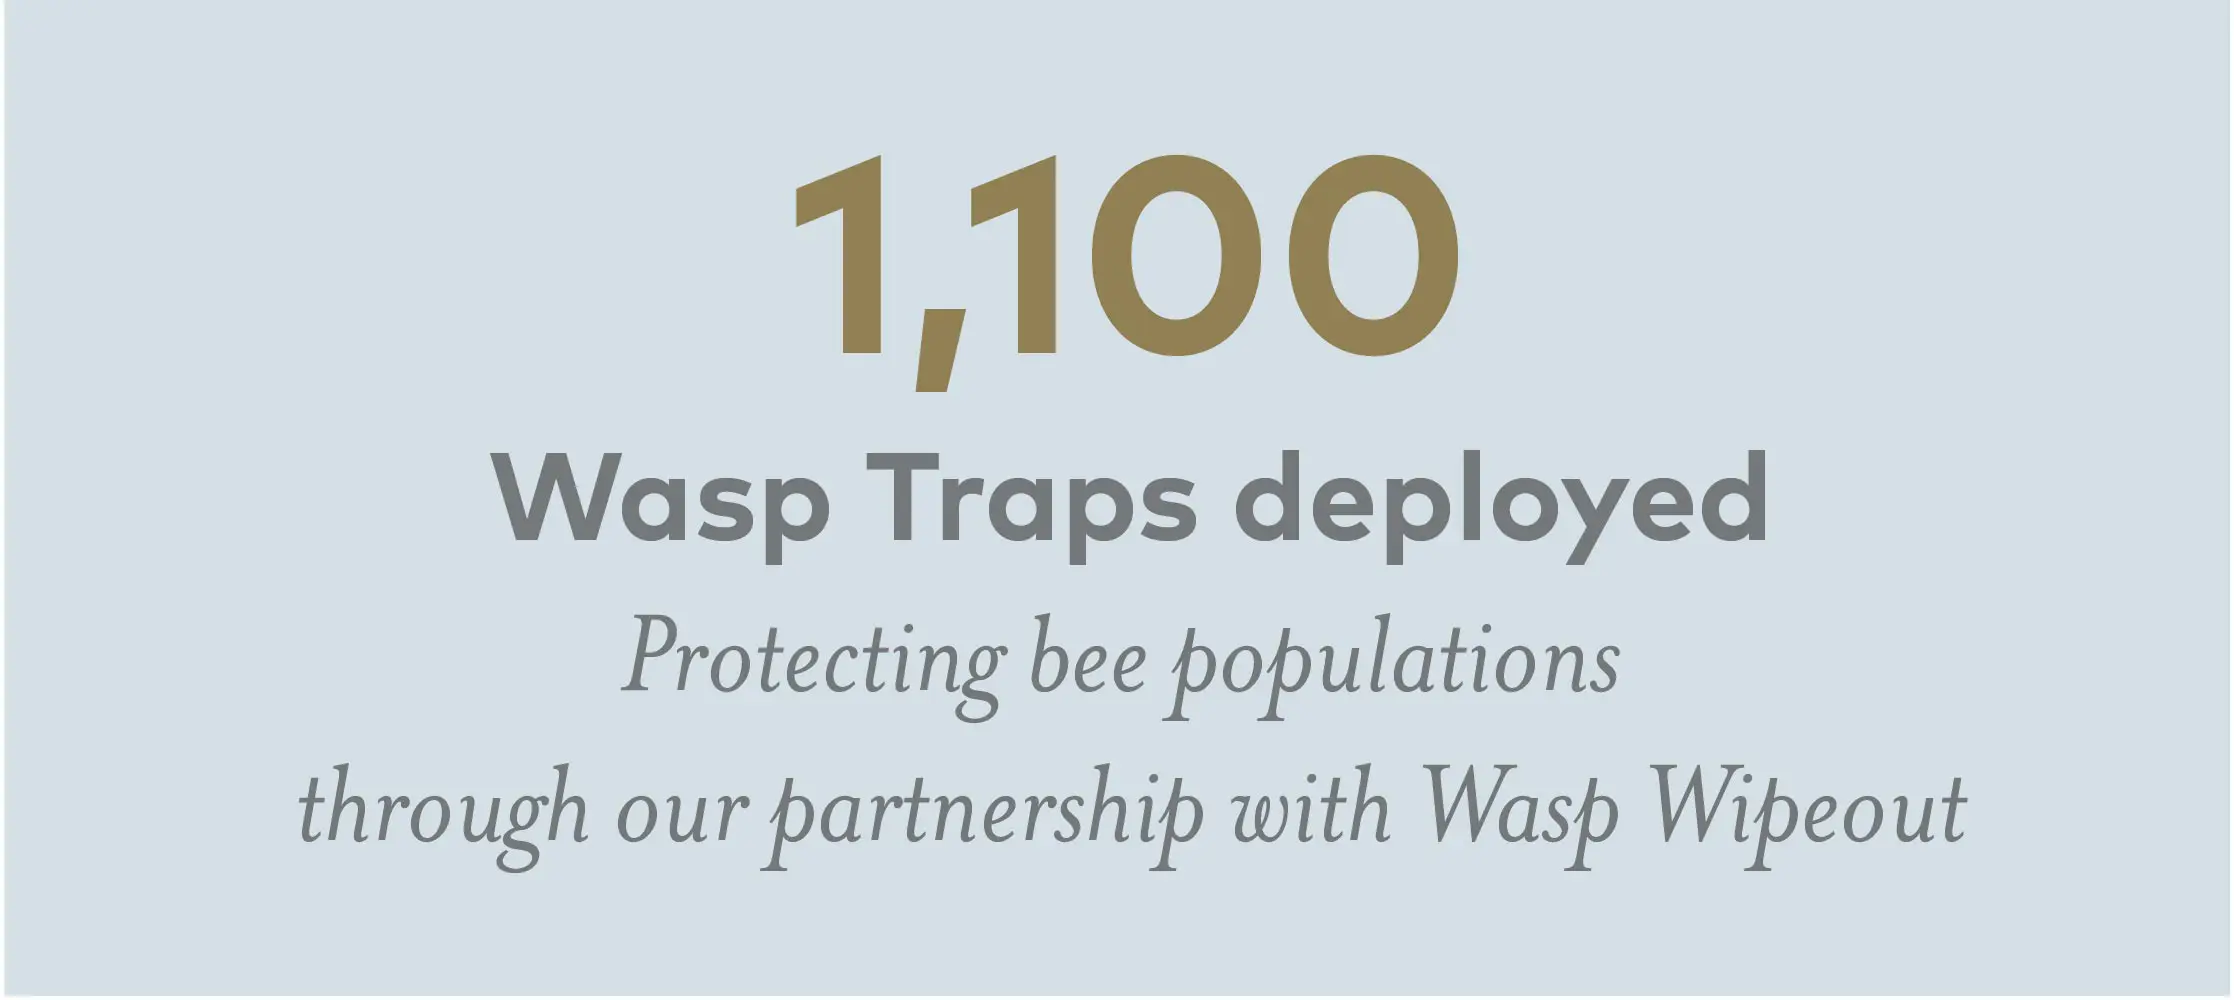 1100 Wasp Traps Deployed